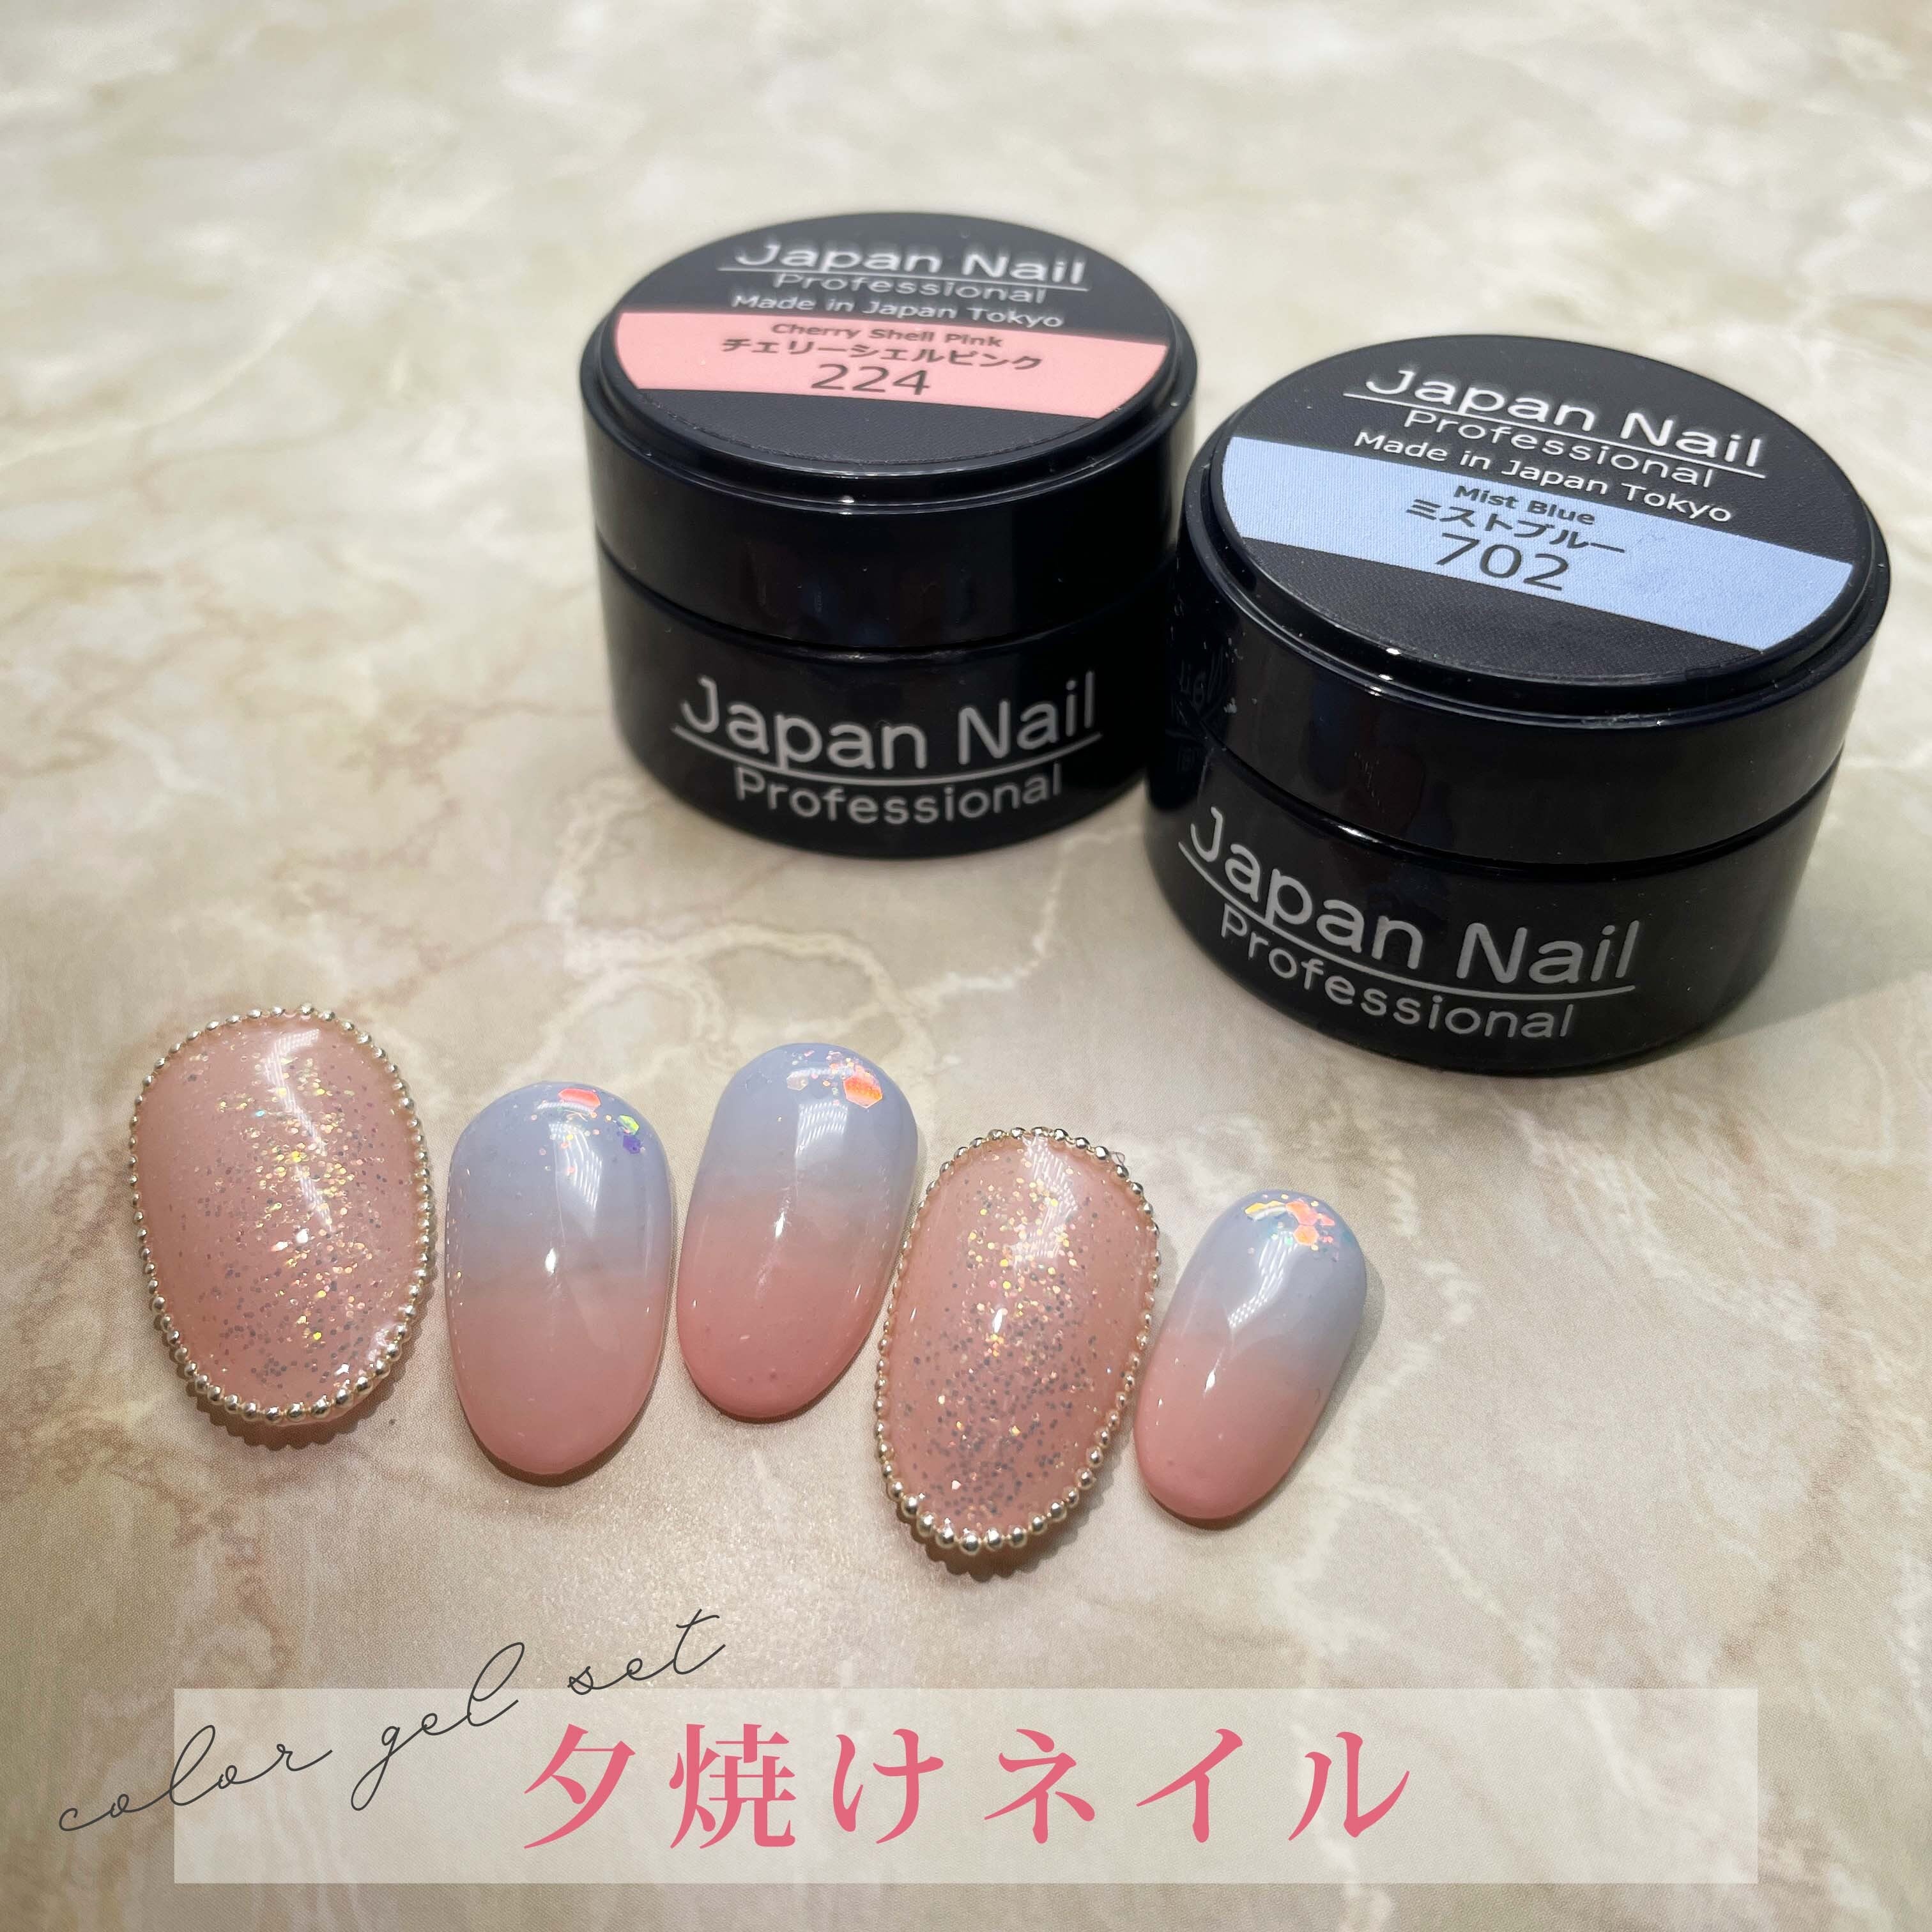 アートNo.2「夕焼けネイル」カラージェルセット 日本製 化粧品登録 